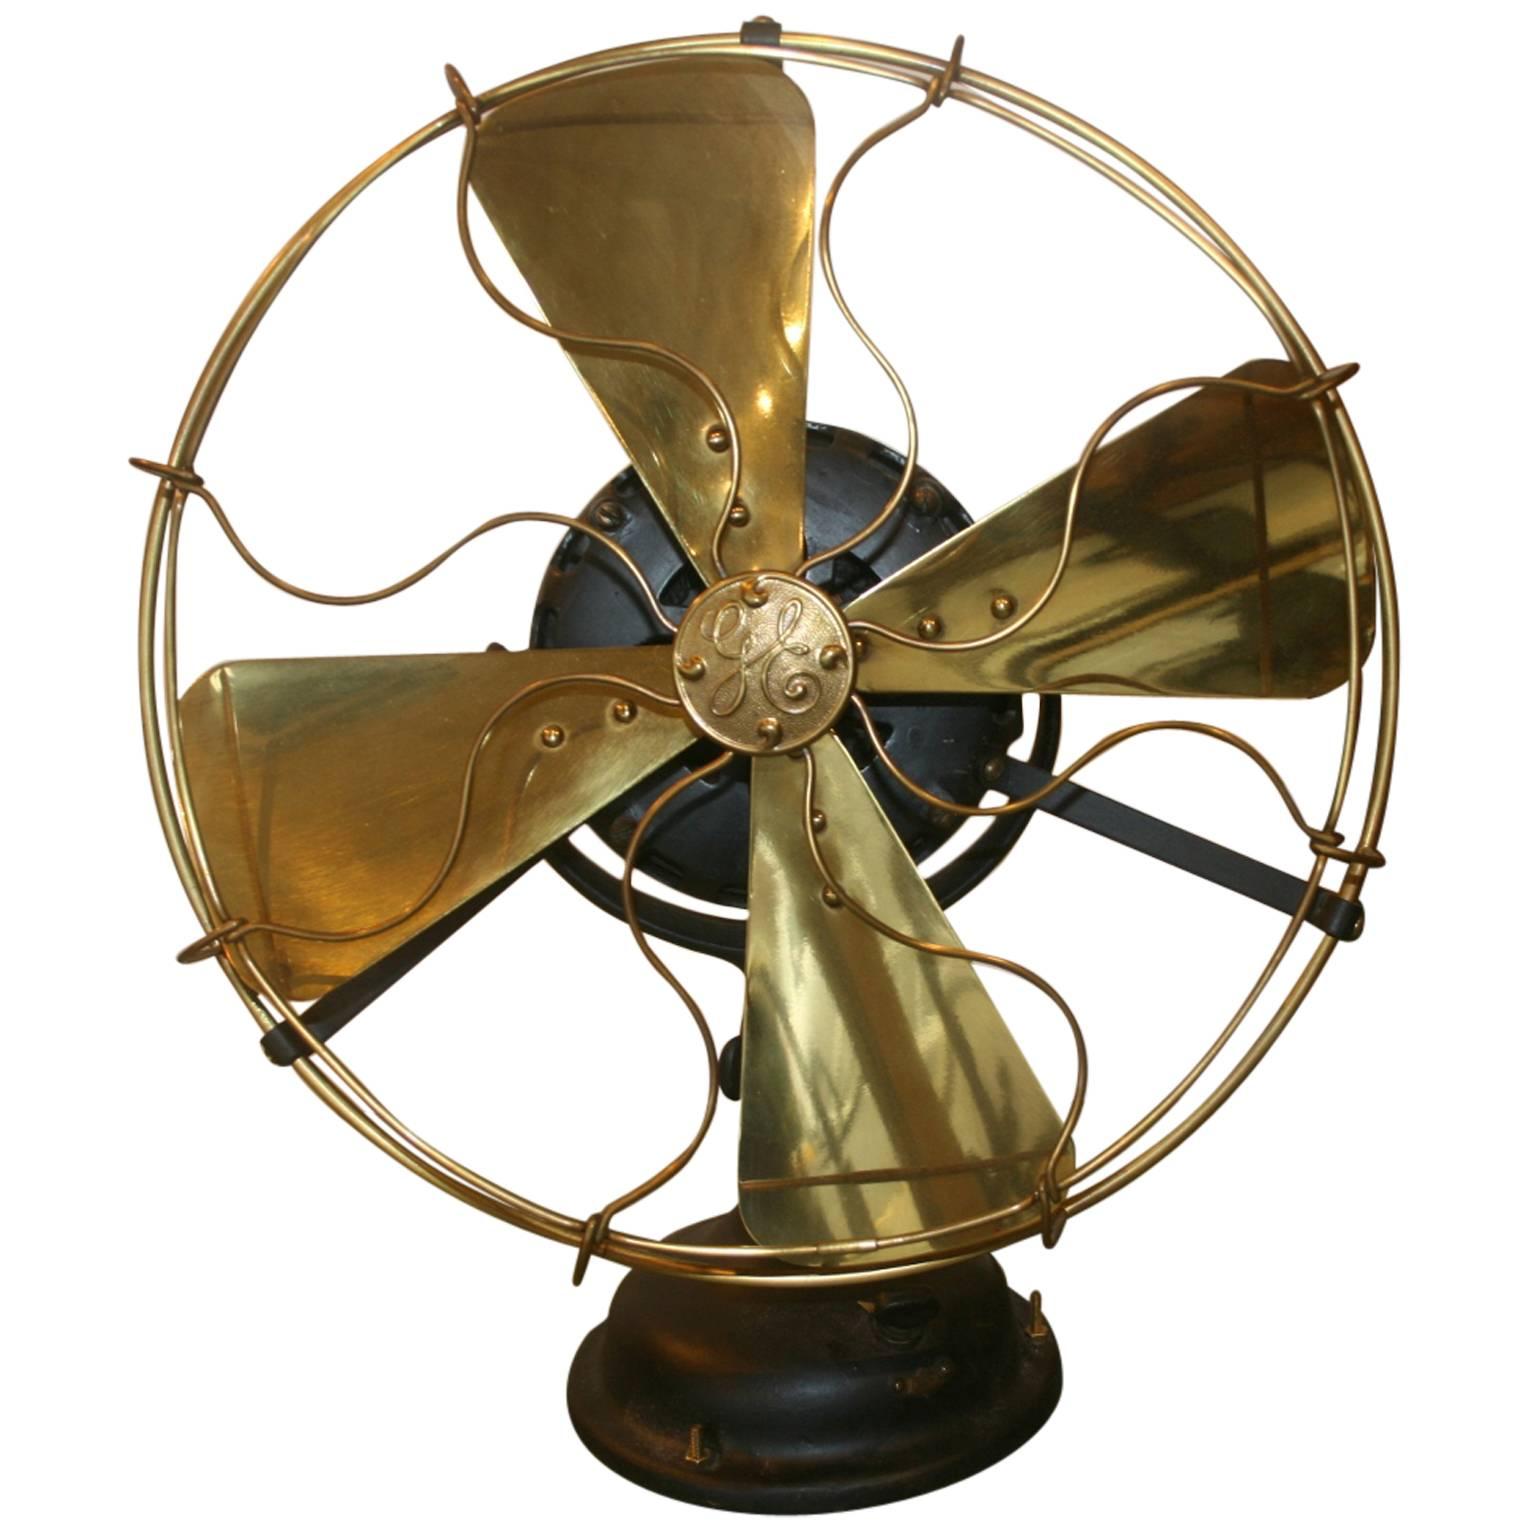 Beautiful Early G.E. Electric Fan